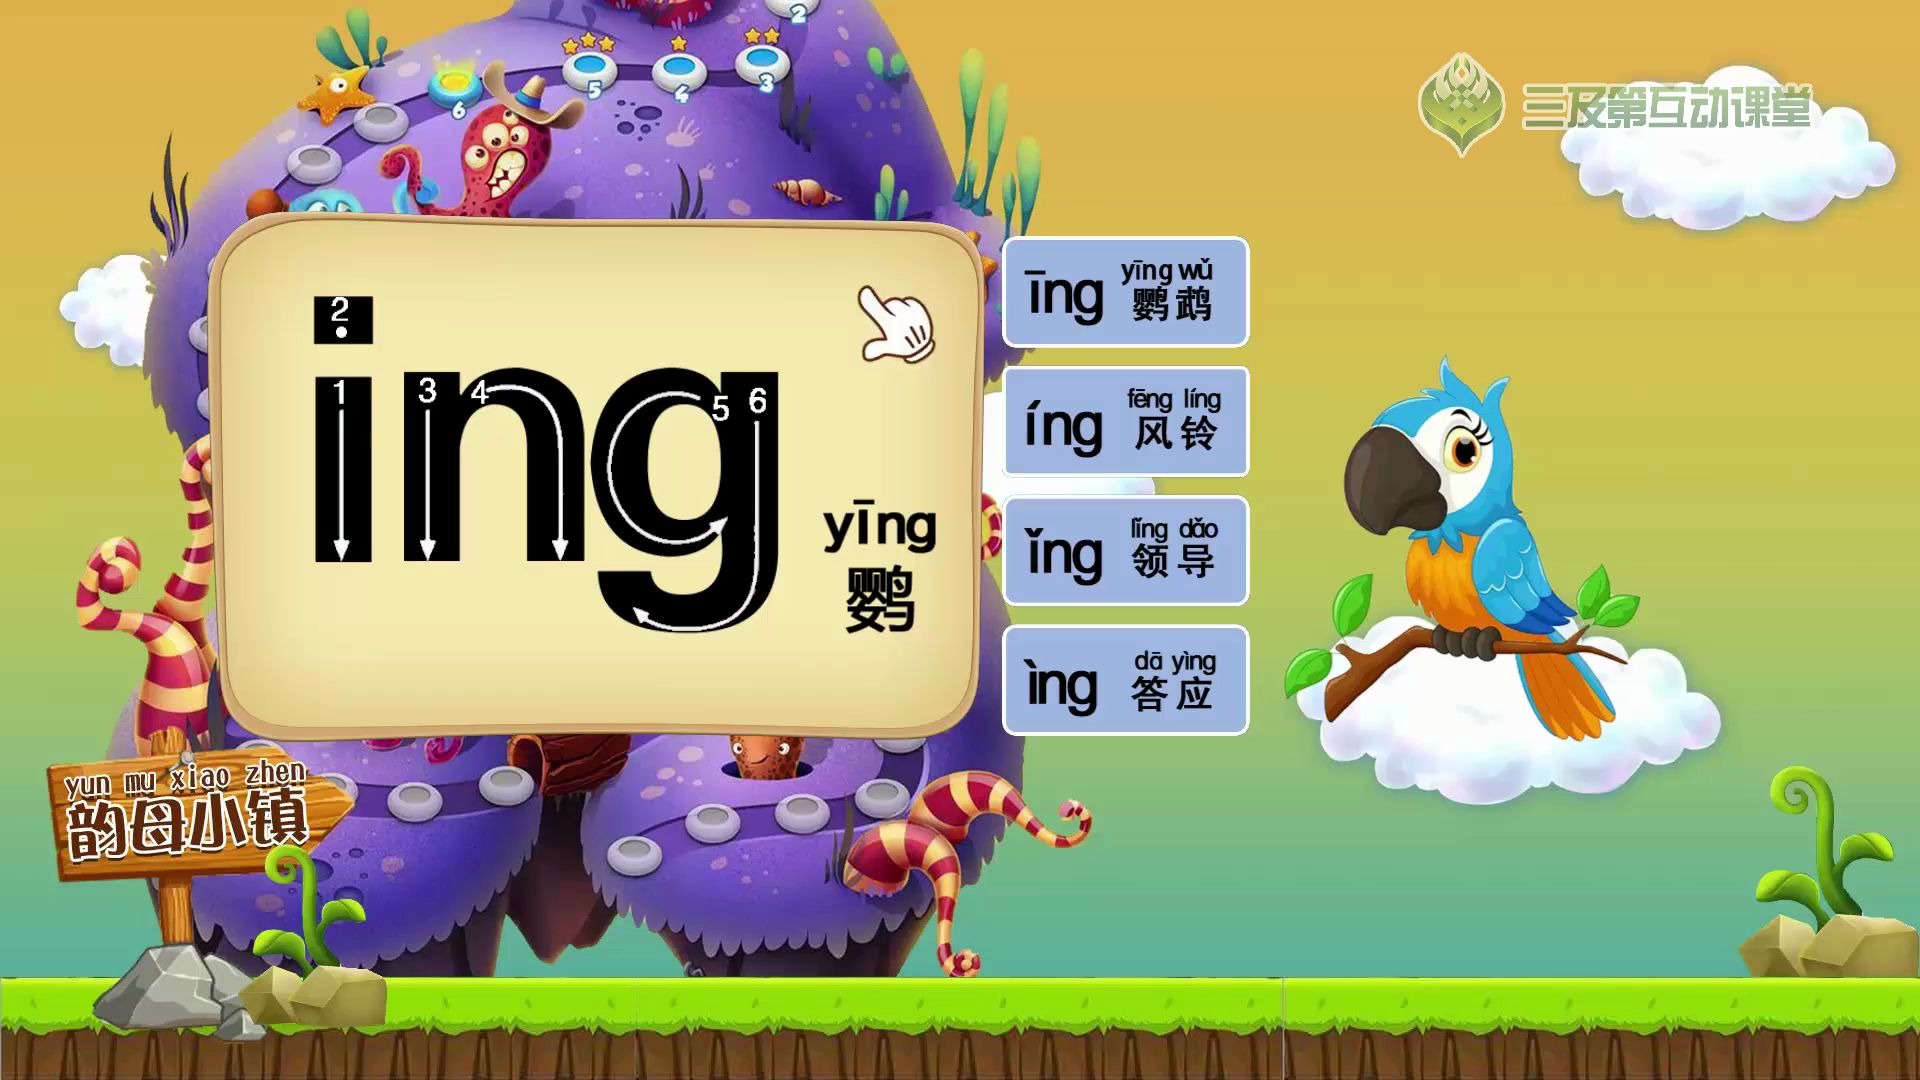 学前必备,汉语拼音字母表之韵母ing,一个动画教孩子学会拼写